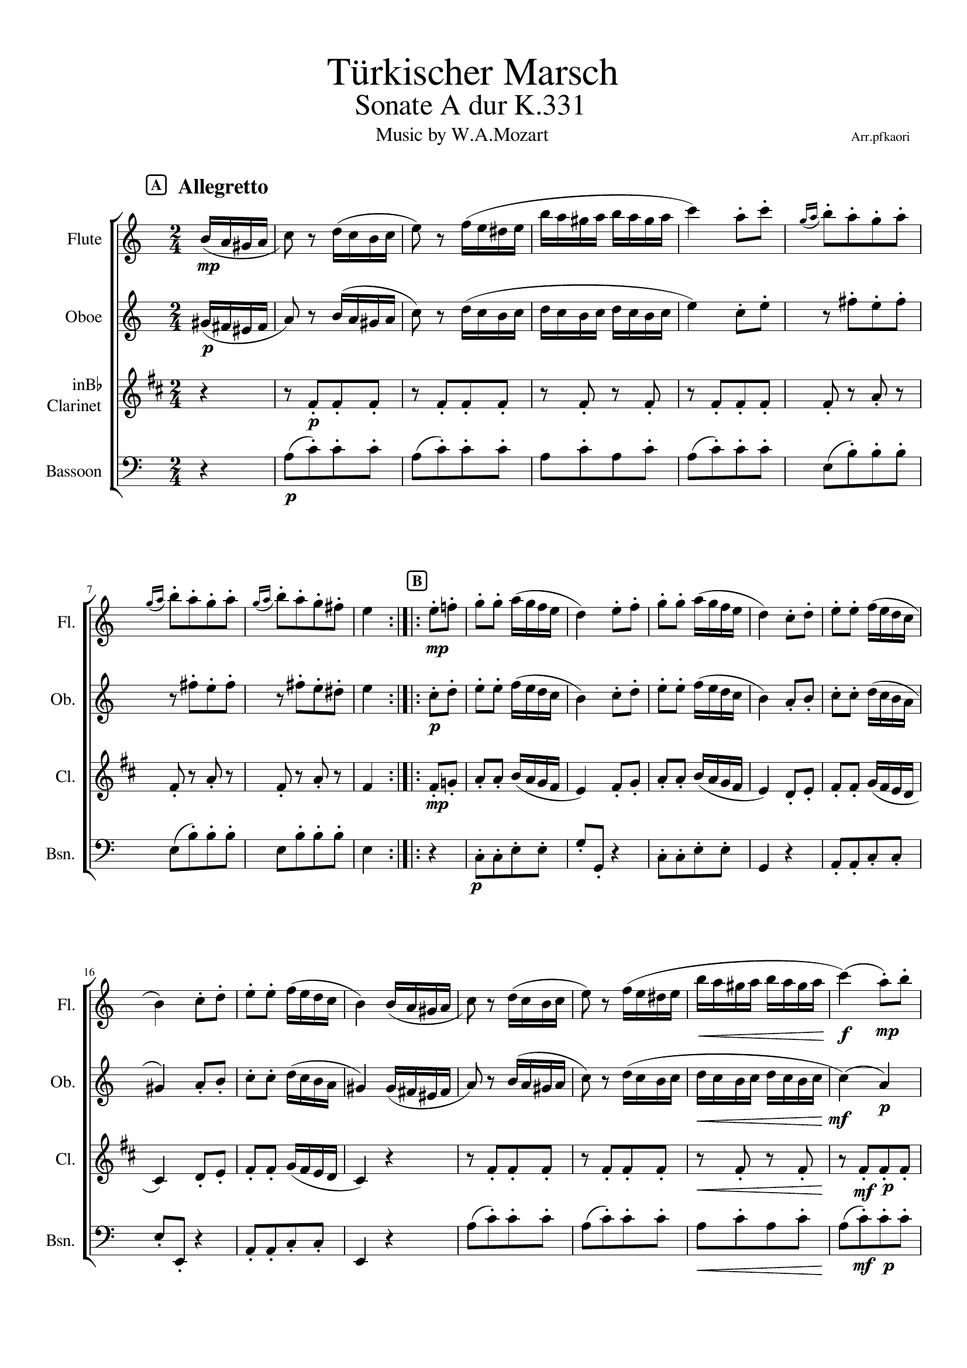 モーツァルト - トルコ行進曲 (木管四重奏/無伴奏 (fl,ob,cl,fg)) by pfkaori